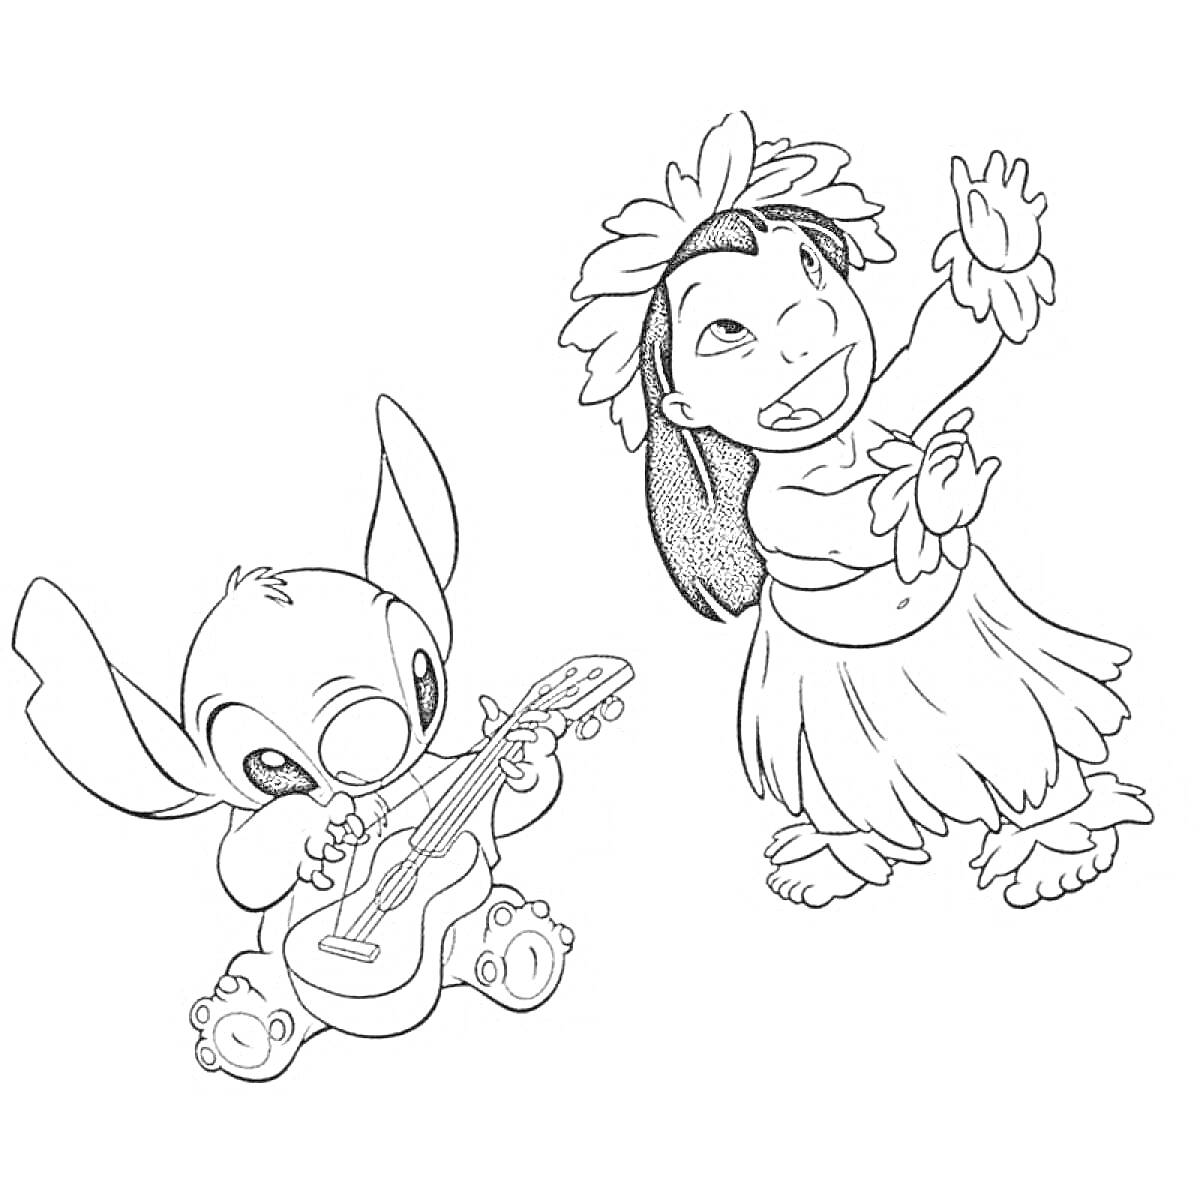 РаскраскаСтич играет на гавайской гитаре, Лило танцует в гавайском костюме